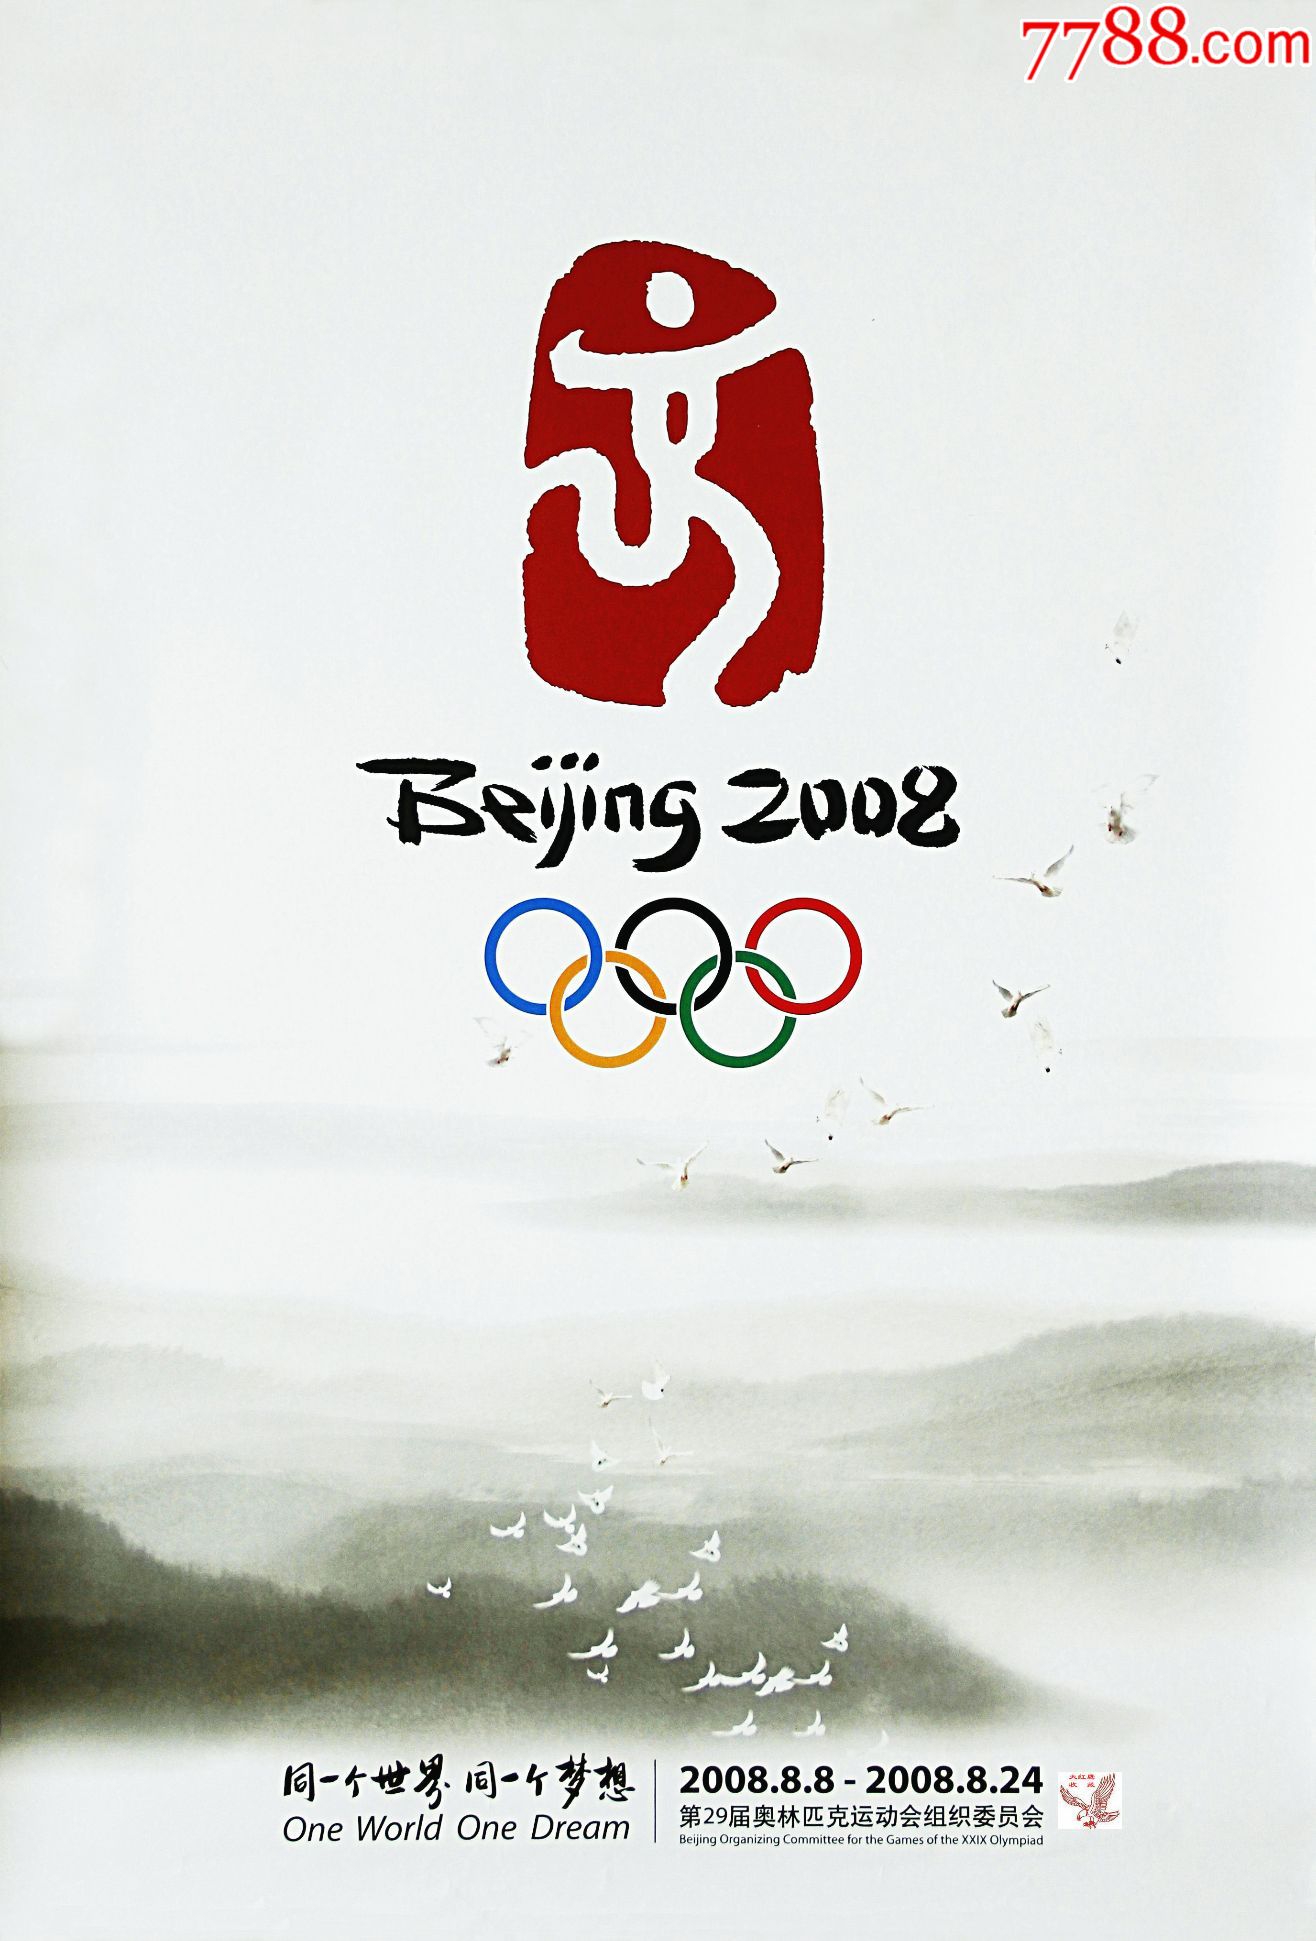 北京2008年奥运会主题海报